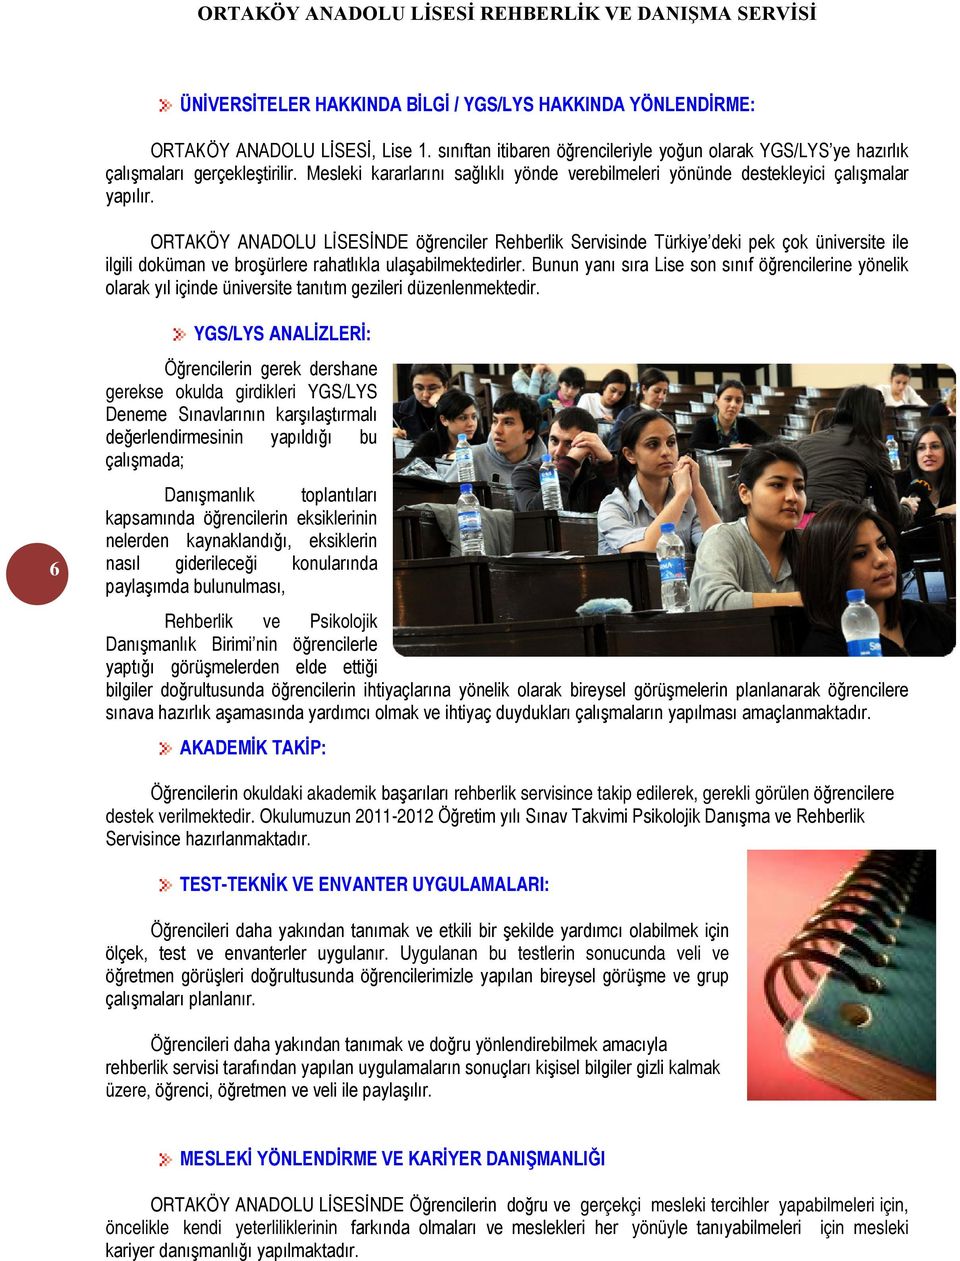 ORTAKÖY ANADOLU LİSESİNDE öğrenciler Rehberlik Servisinde Türkiye deki pek çok üniversite ile ilgili doküman ve broşürlere rahatlıkla ulaşabilmektedirler.